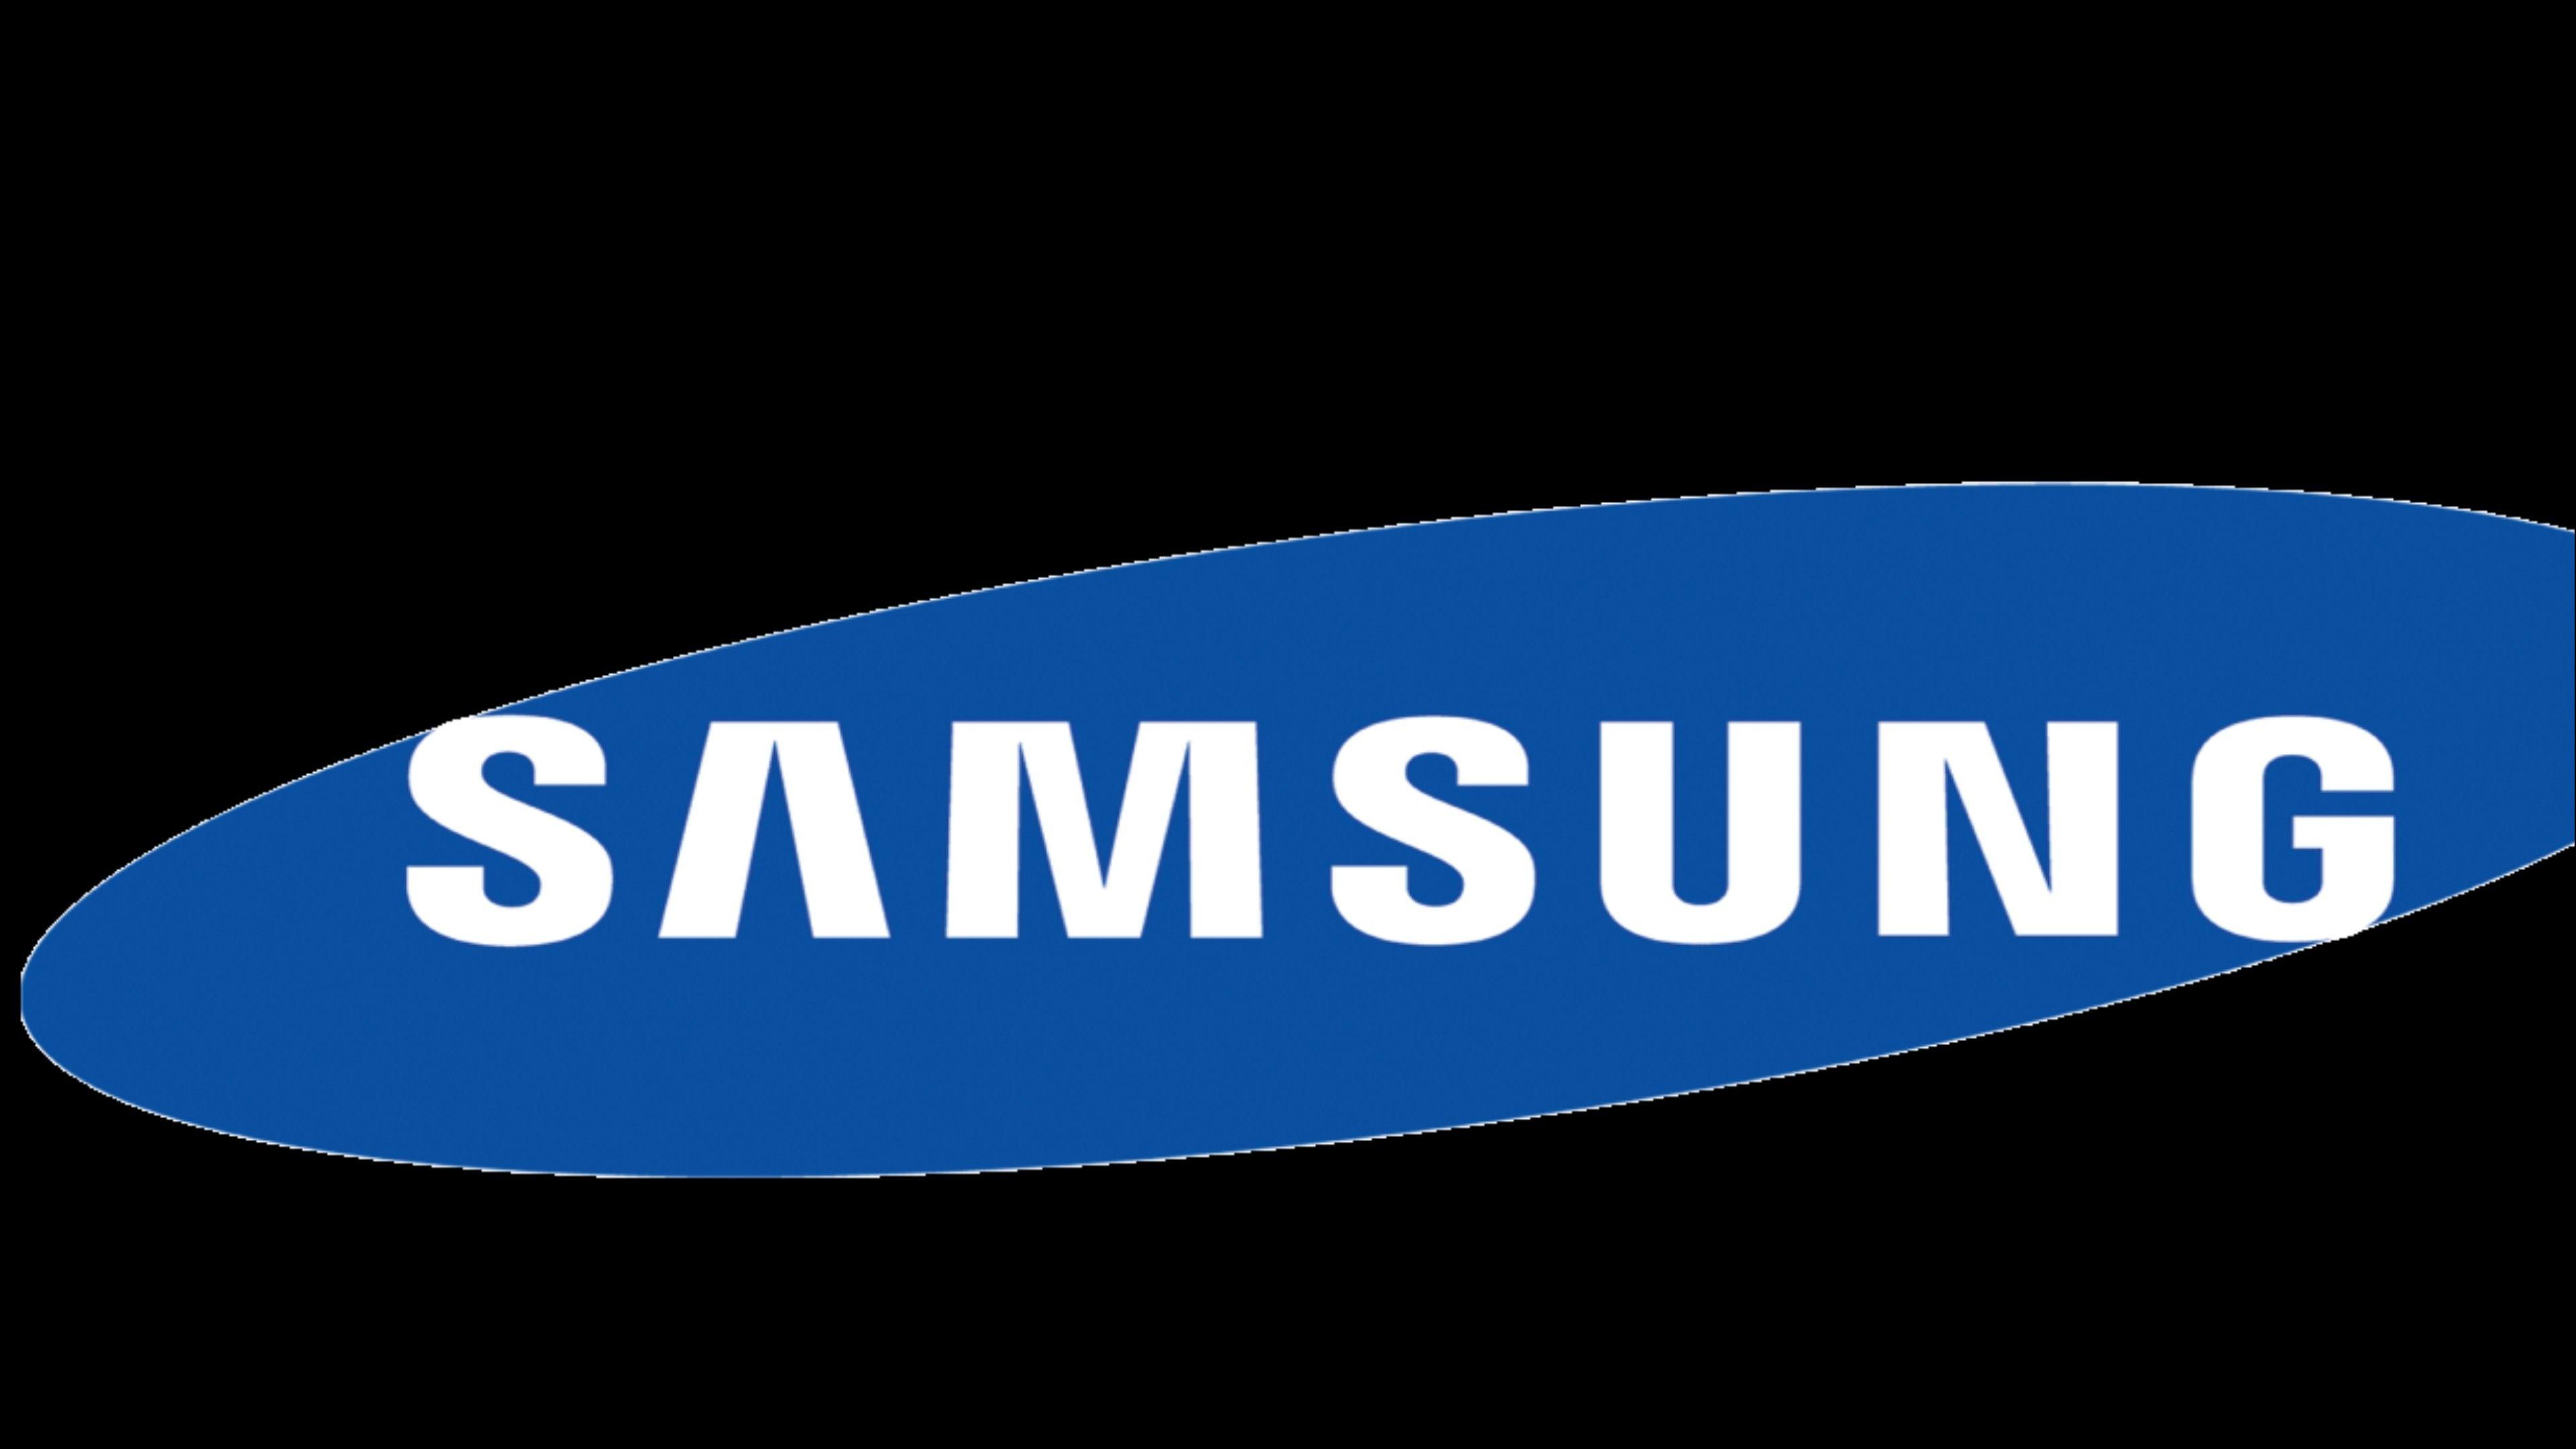 Samsung TV Logo - Samsung LED TV Logo Wallpaper